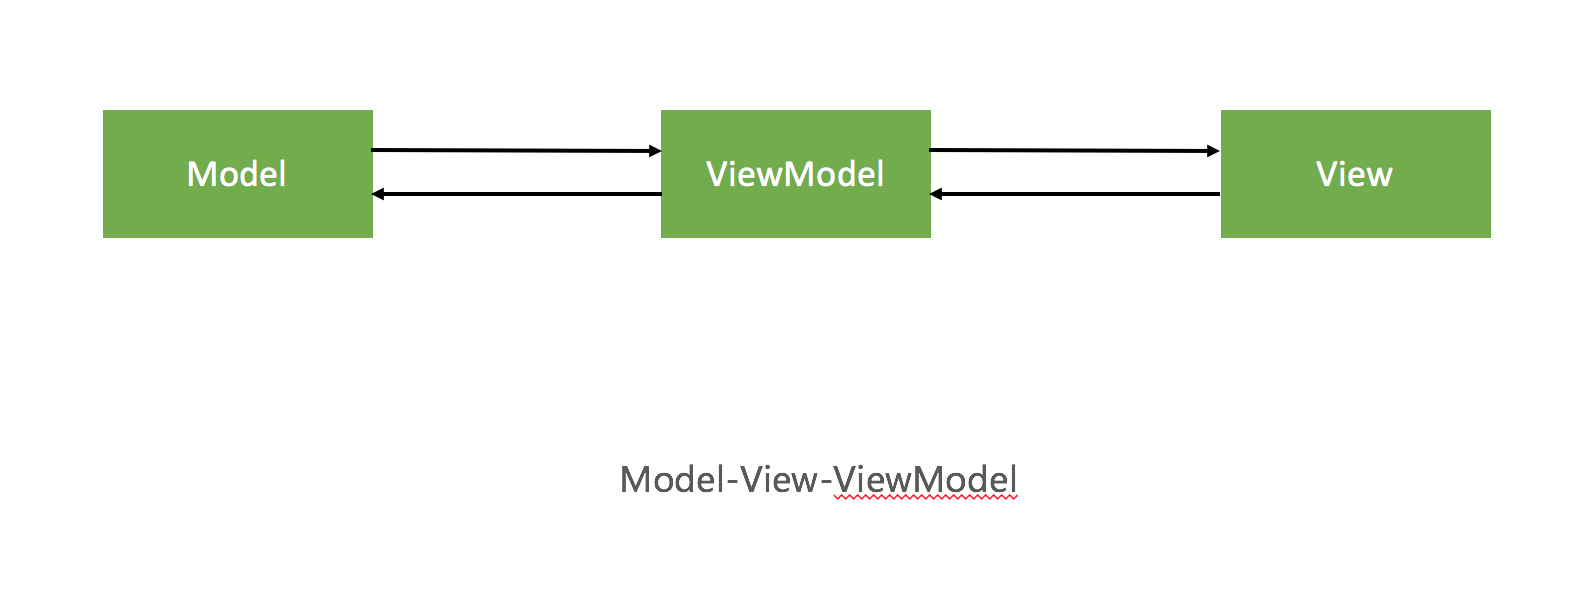 设计模式与架构 - 图4